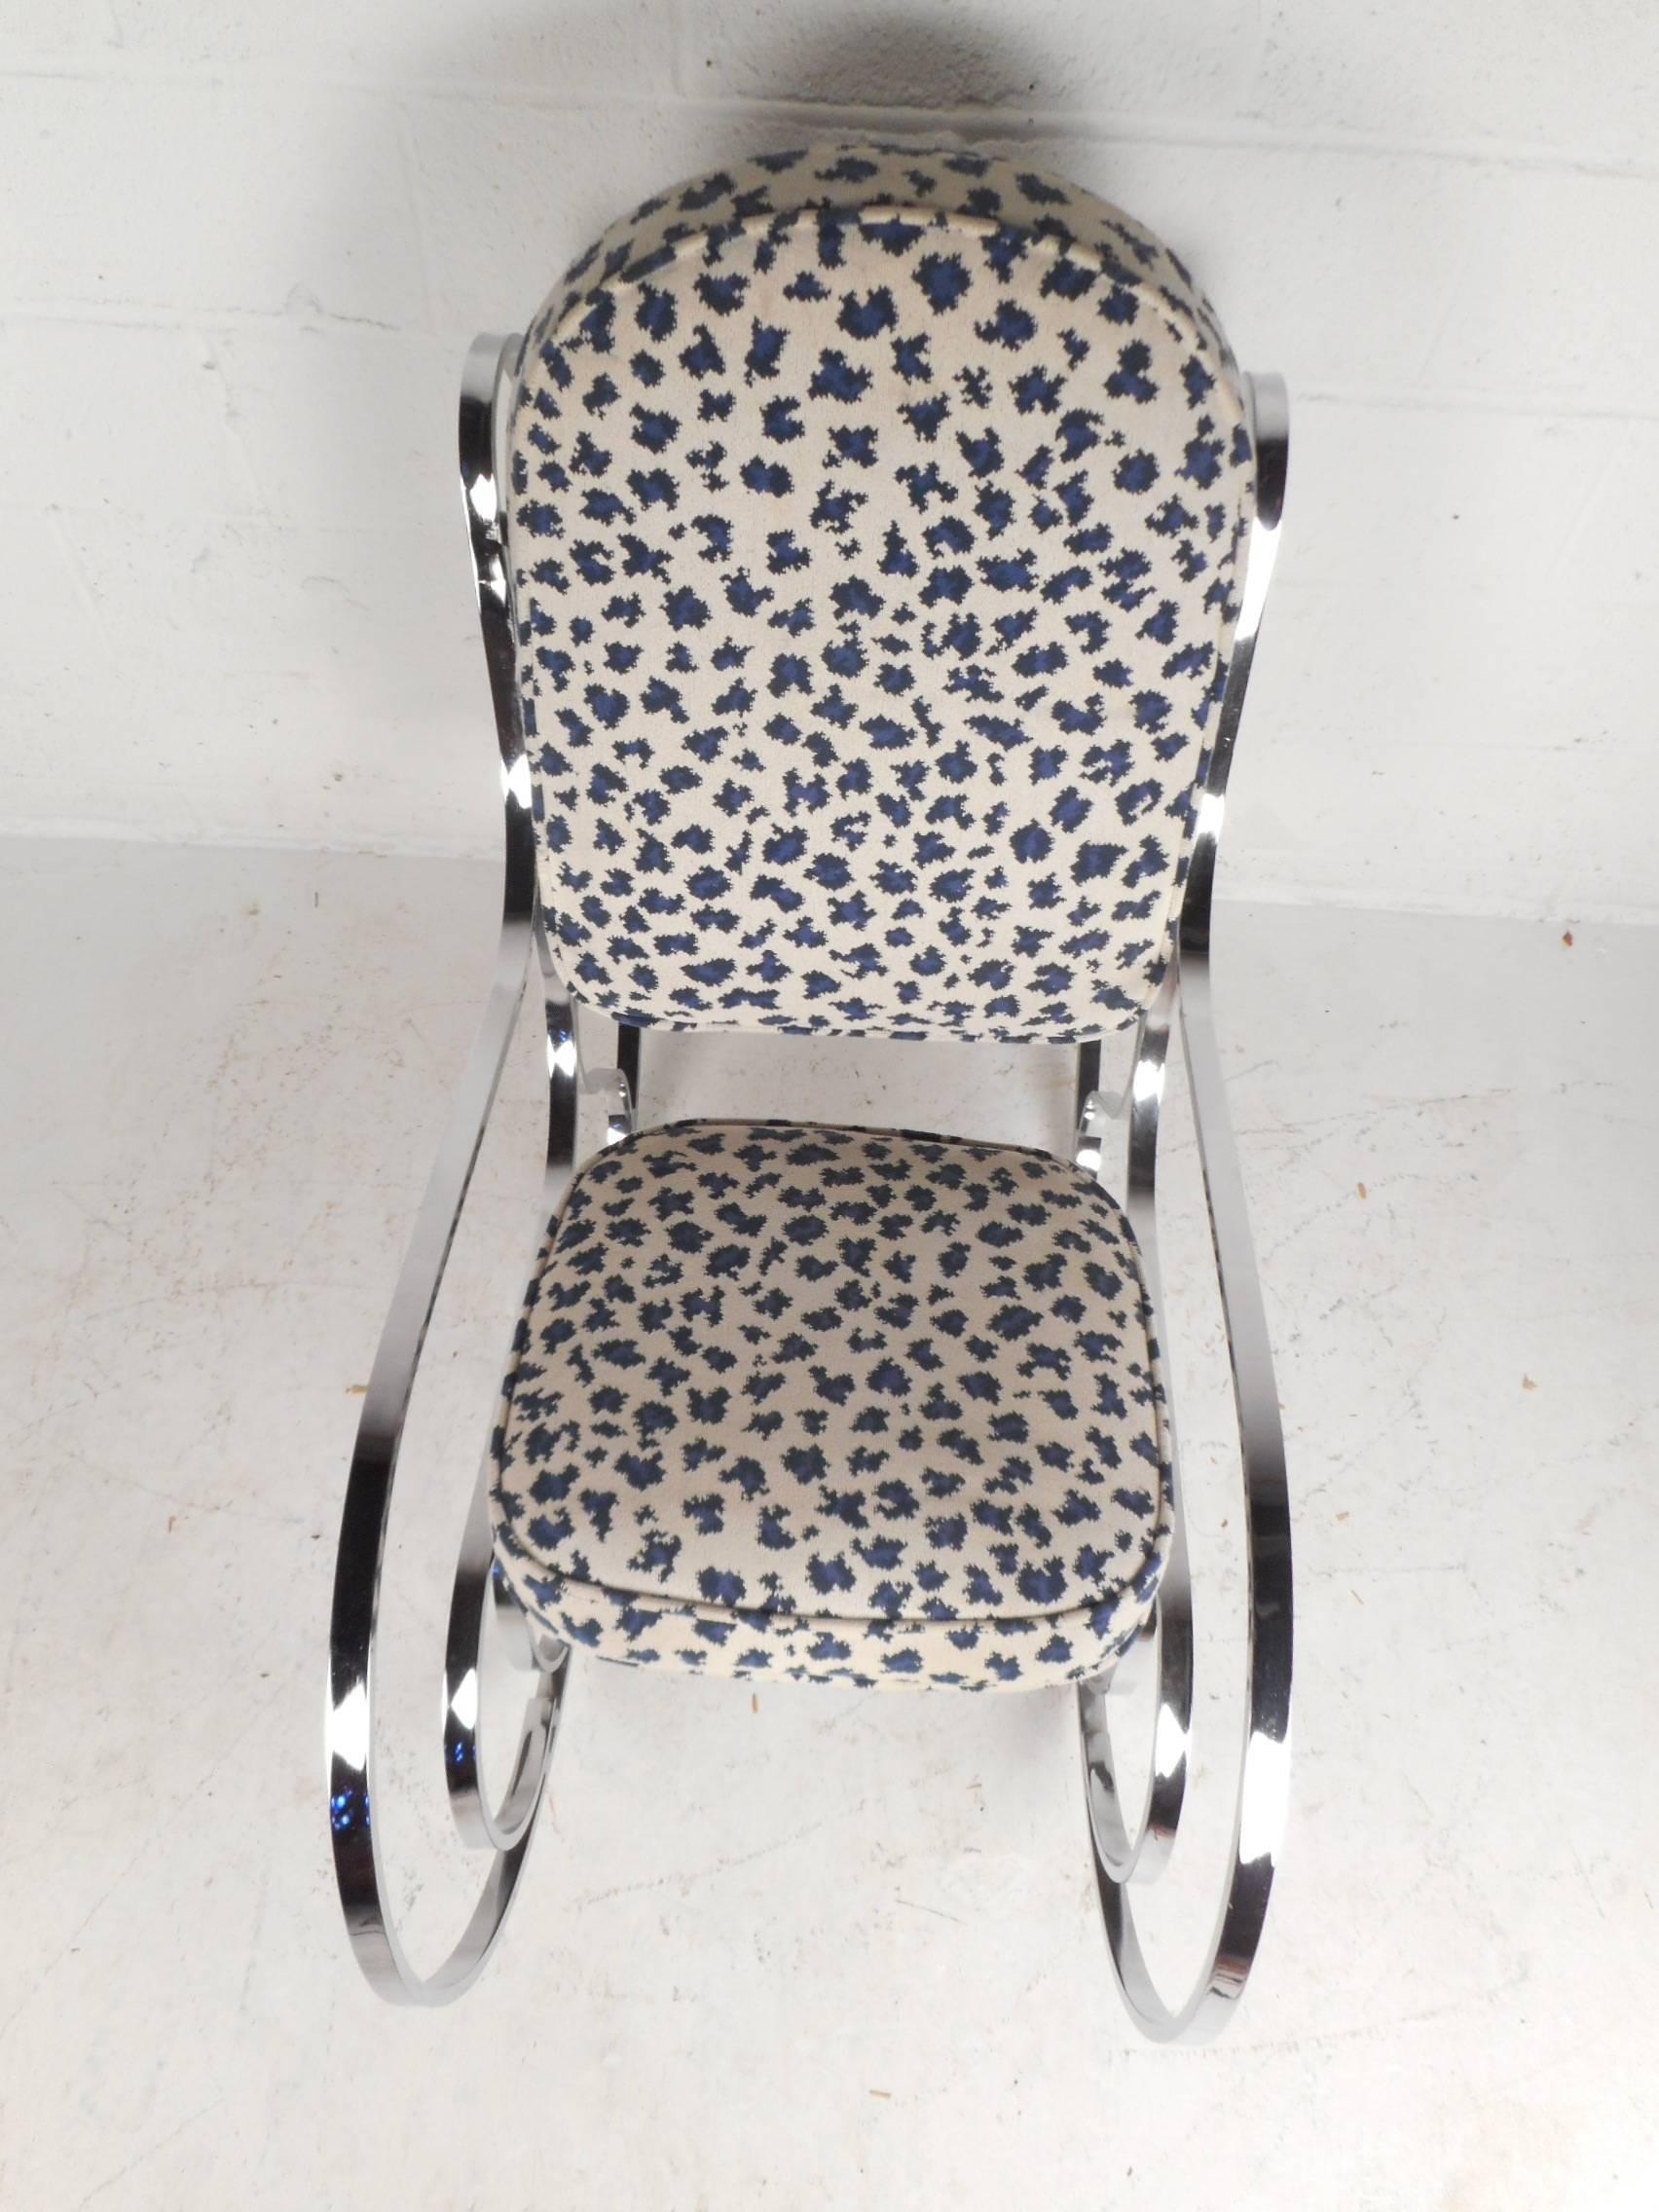 Dieser schöne moderne Schaukelstuhl im Vintage-Stil verfügt über ein schweres Chromgestell mit Flachstangen und gepolsterter Sitzfläche. Der stilvolle weiß-blaue Stoff über der dick gepolsterten Sitzfläche sorgt für maximalen Komfort. Das geformte